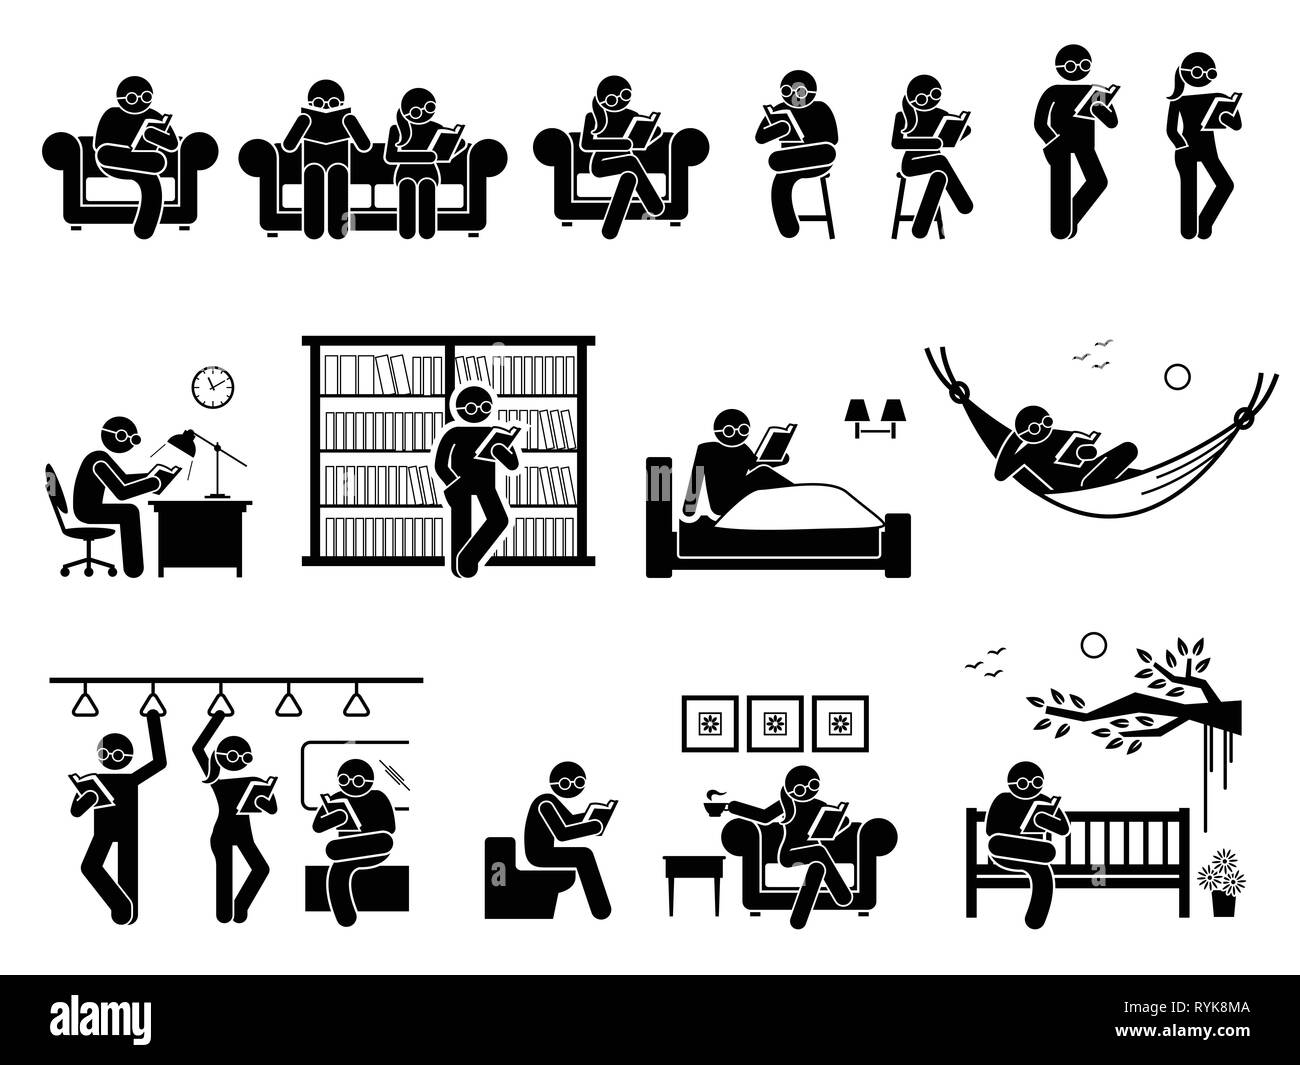 Livre de lecture de personnes à différents endroits. Les pictogrammes représente l'homme et la femme assis et debout pour lire livre sur la table, chaise, table, bibliothèque, lit, hammo Illustration de Vecteur